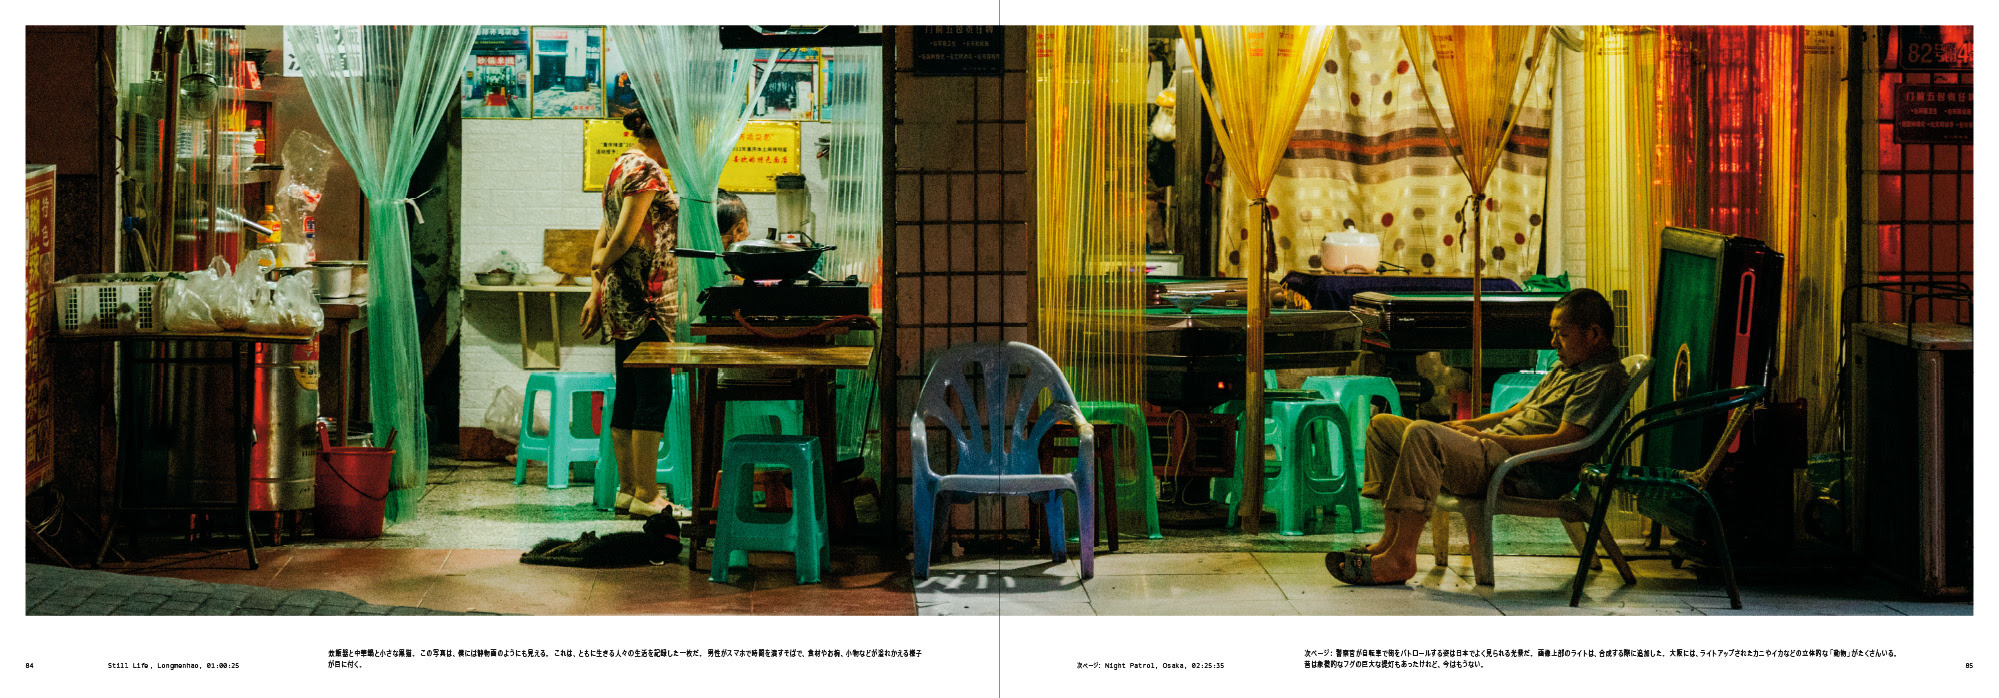 写真集『アフター・ダーク リアム・ウォン-午前零時からの街- 』 発行元：パイ インターナショナル